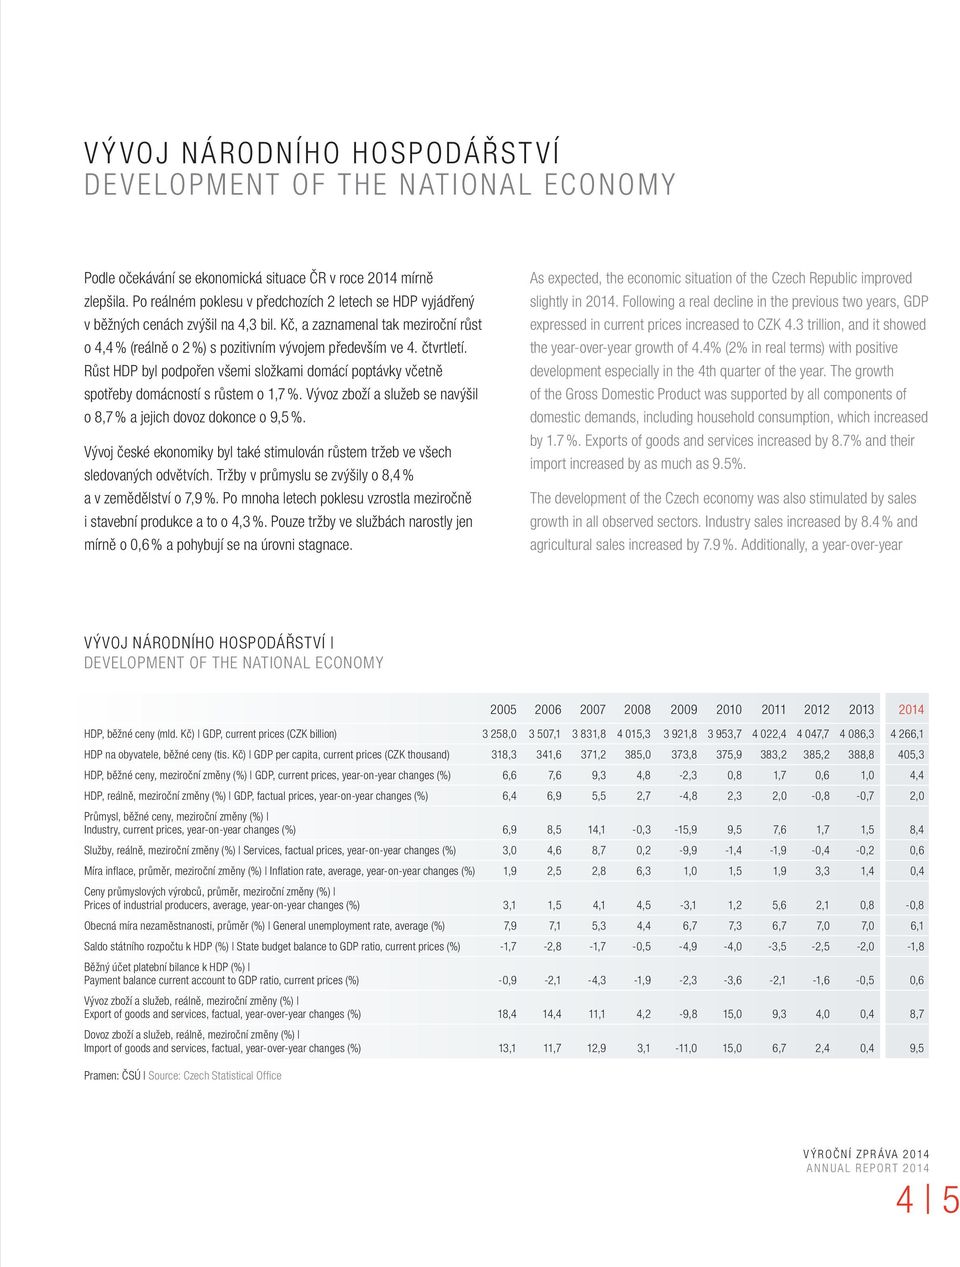 čtvrtletí. Růst HDP byl podpořen všemi složkami domácí poptávky včetně spotřeby domácností s růstem o 1,7 %. Vývoz zboží a služeb se navýšil o 8,7 % a jejich dovoz dokonce o 9,5 %.